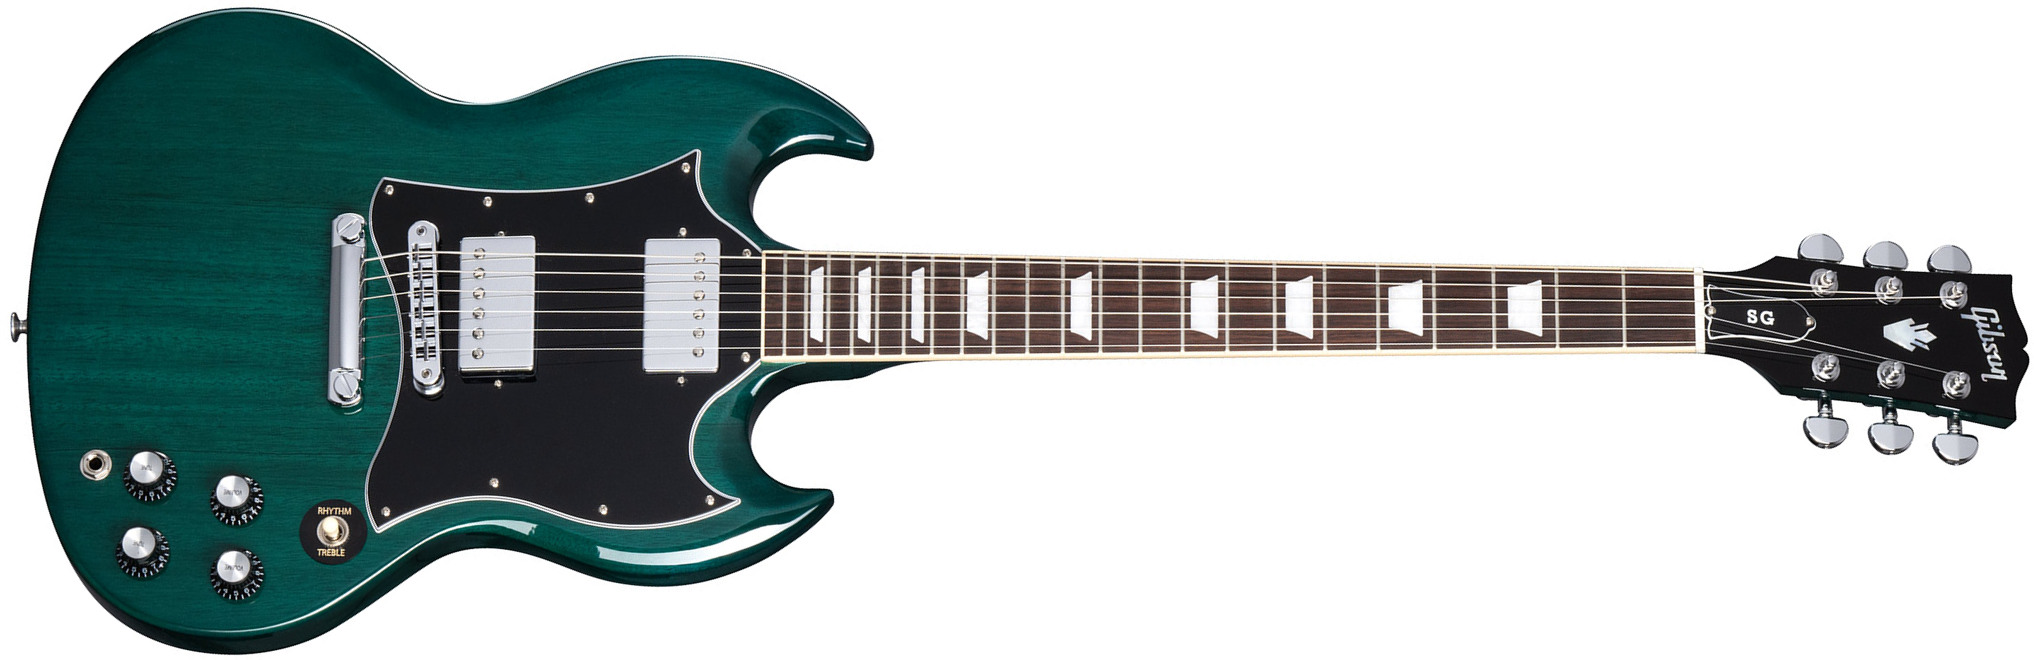 Gibson Sg Standard Custom Color 2h Ht Rw - Translucent Teal - Guitare Électrique Double Cut - Main picture